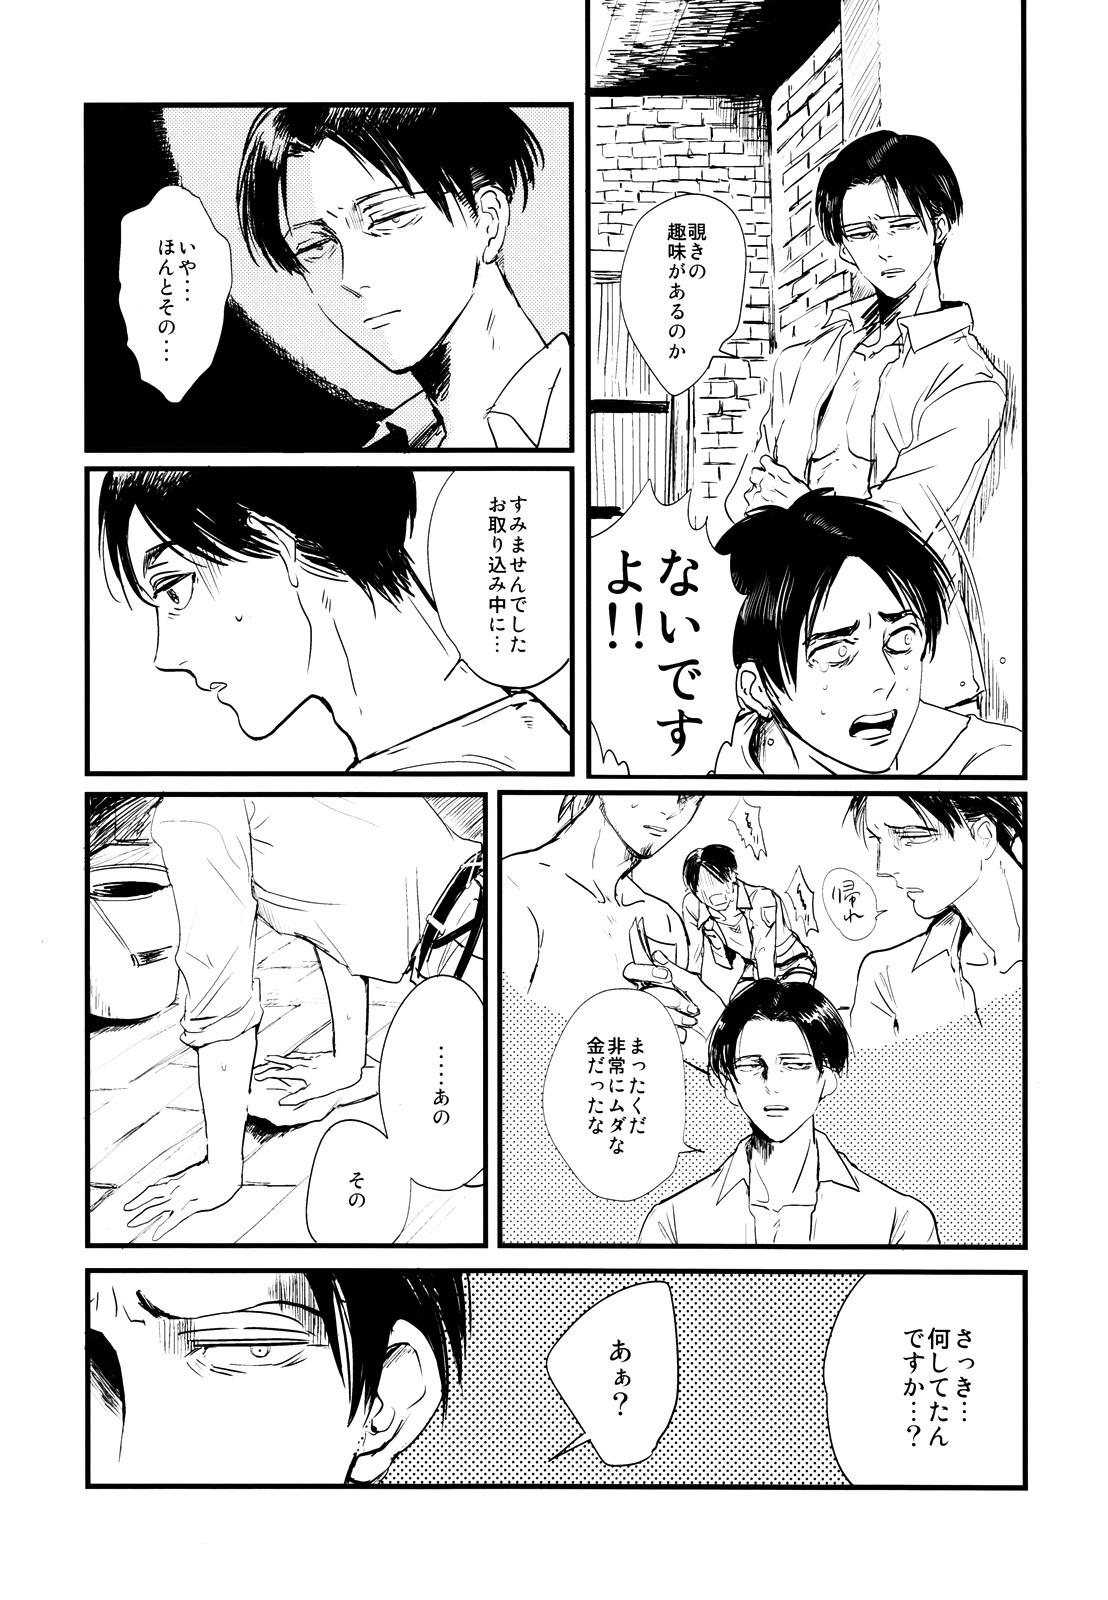 Ladyboy ] Heichou to Ore - Shingeki no kyojin Voyeur - Page 9